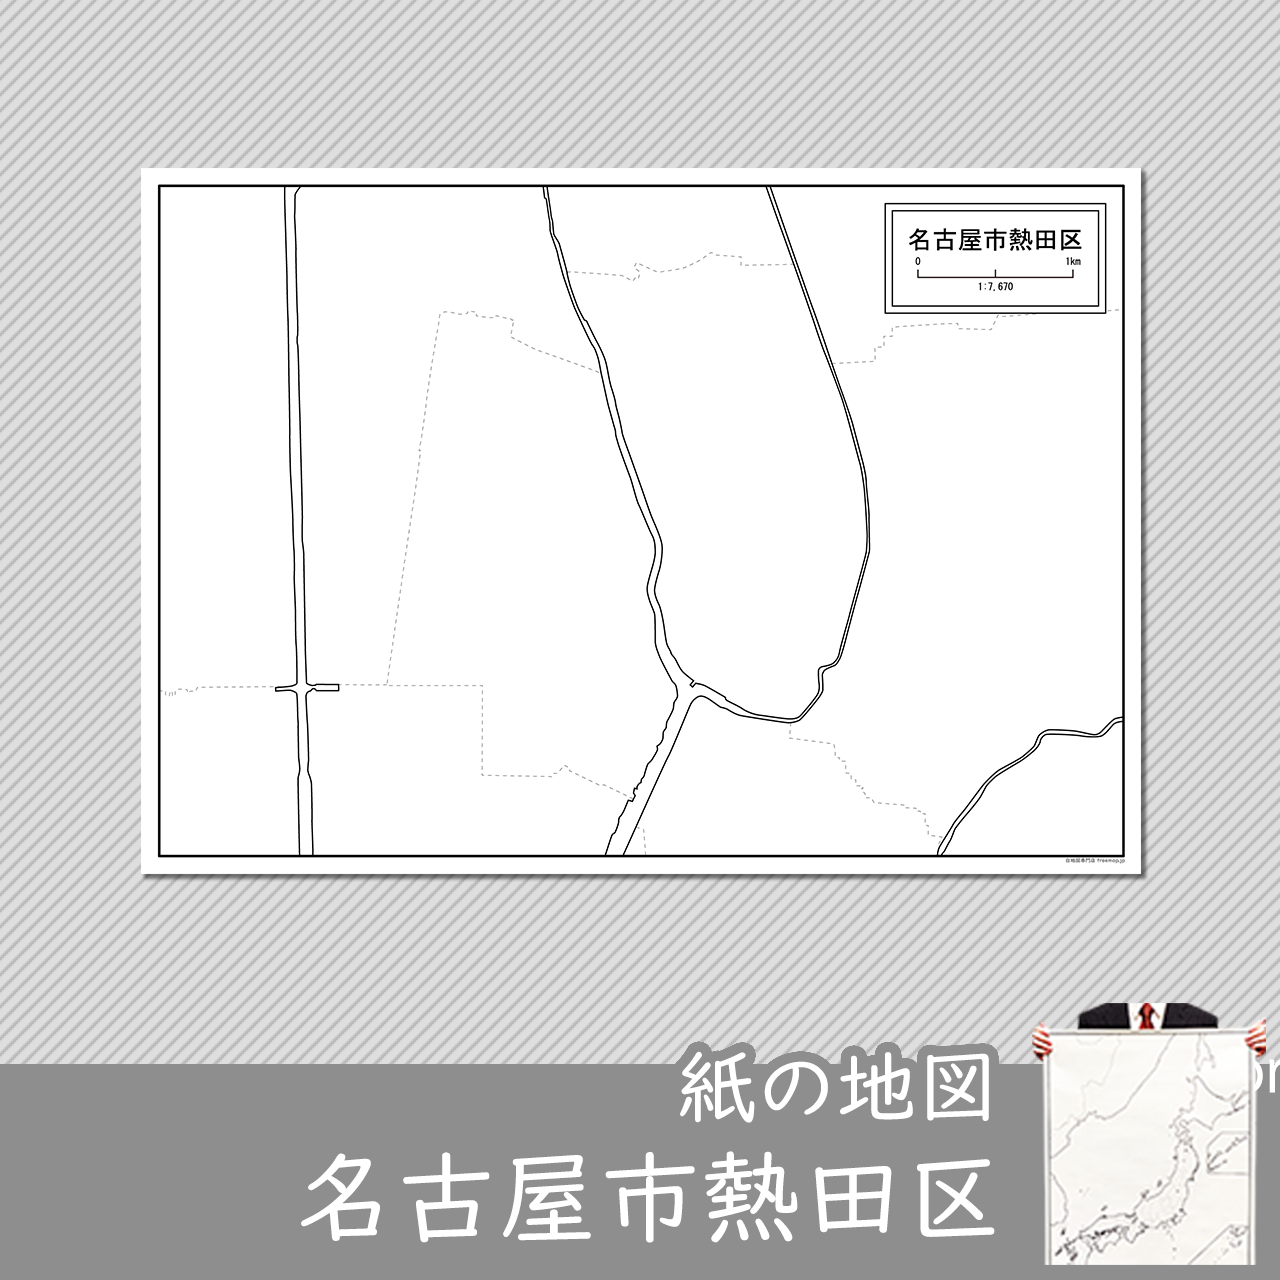 名古屋市熱田区の紙の白地図